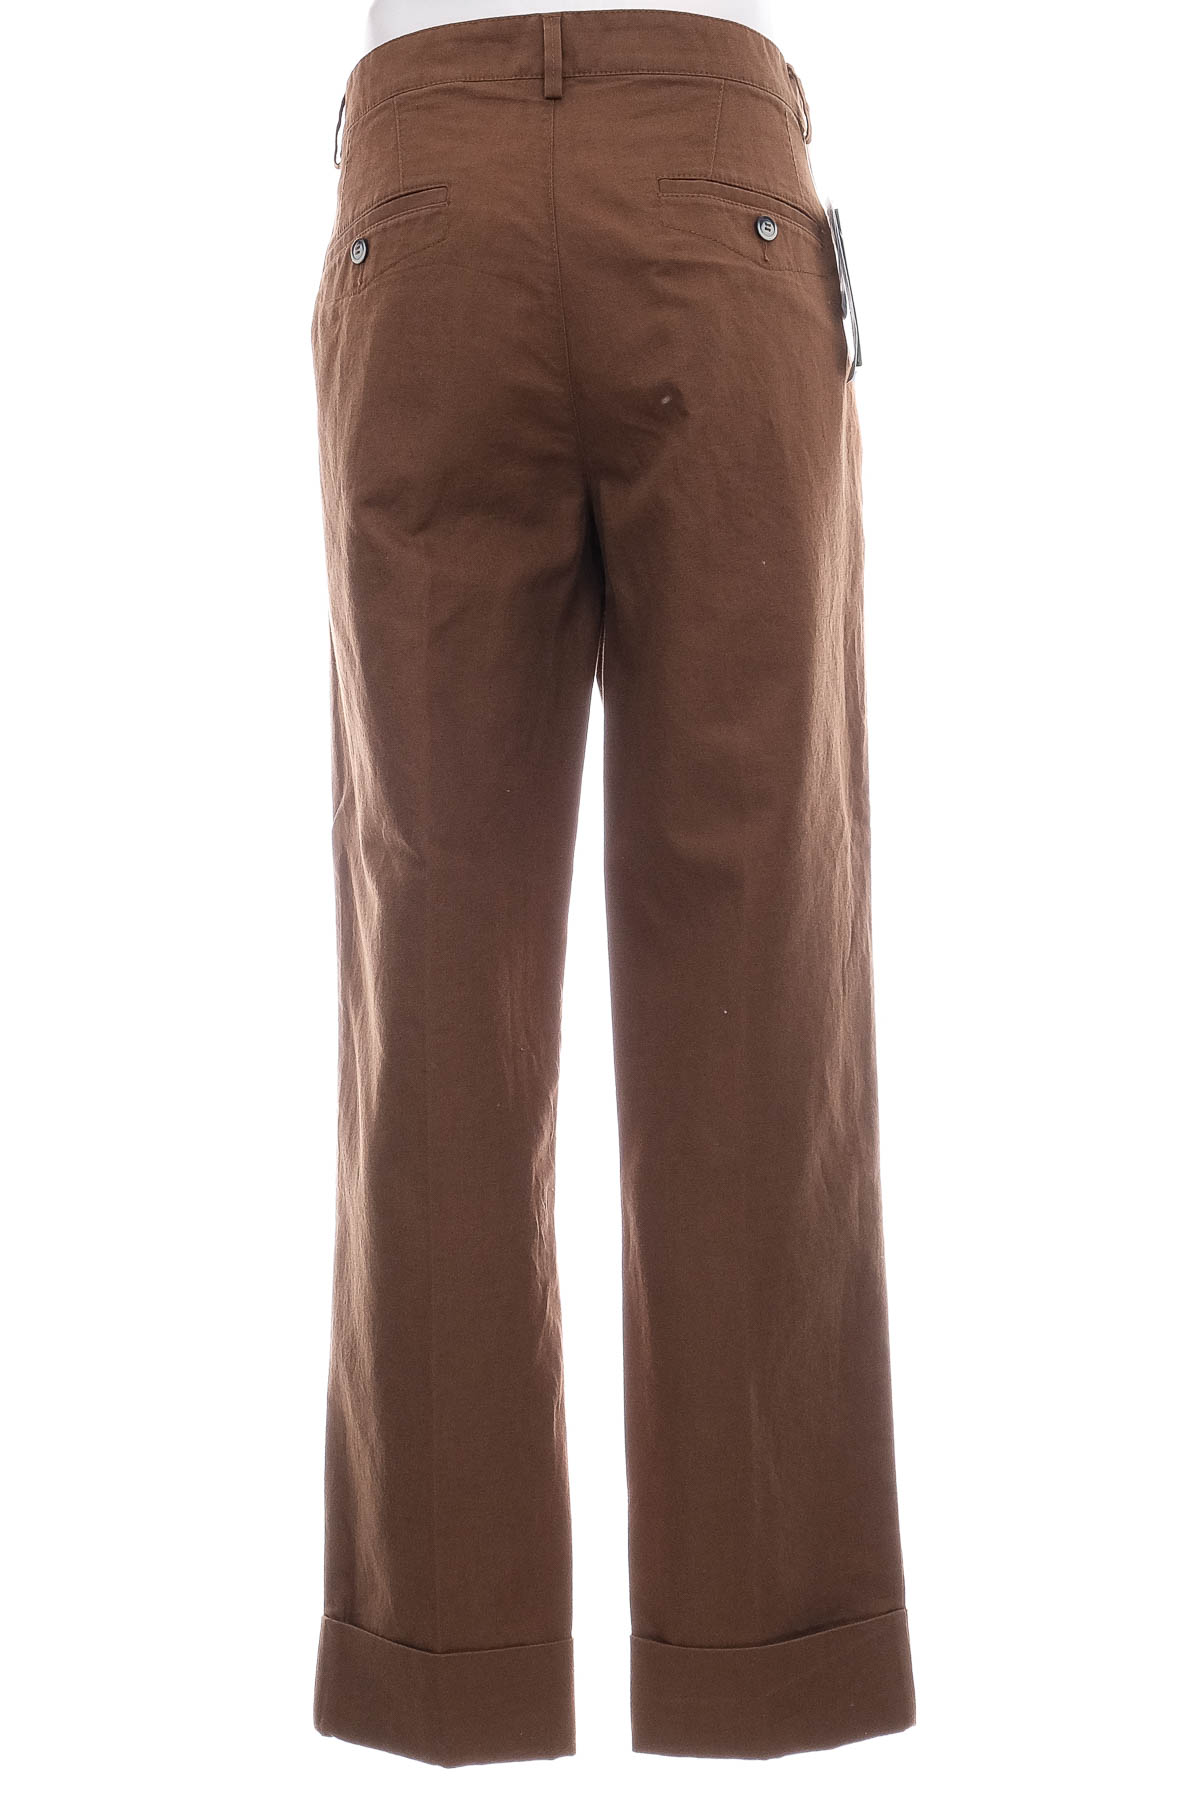 Pantalon pentru bărbați - United Colors of Benetton - 1